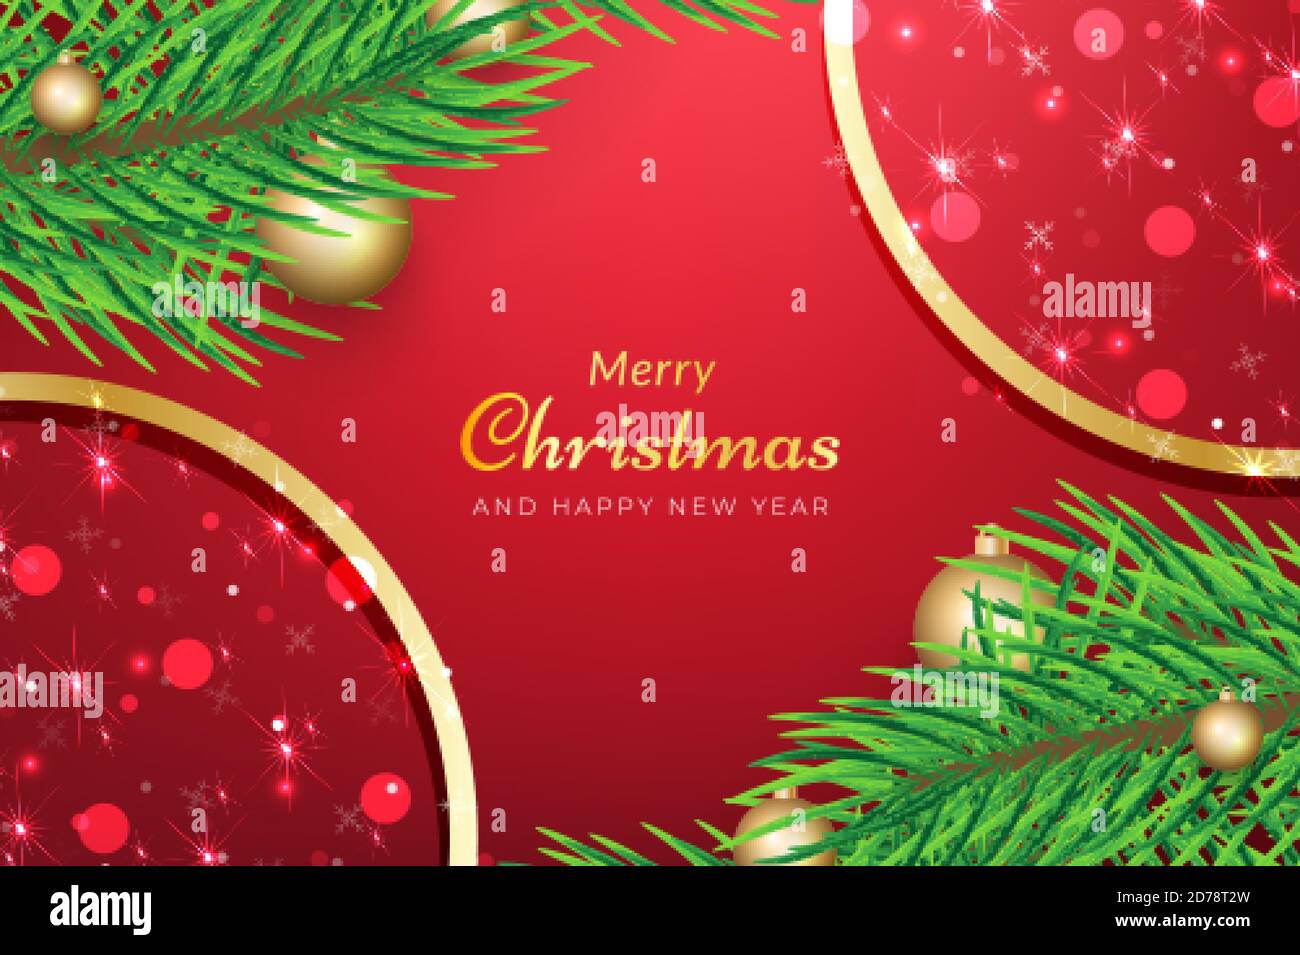 Weihnachtshintergrund mit Ästen und glitzerndem Schnee. vektor-Designs für Anzeigen, Banner, Grußkarten, Social-Media-Beiträge und vieles mehr Stock Vektor